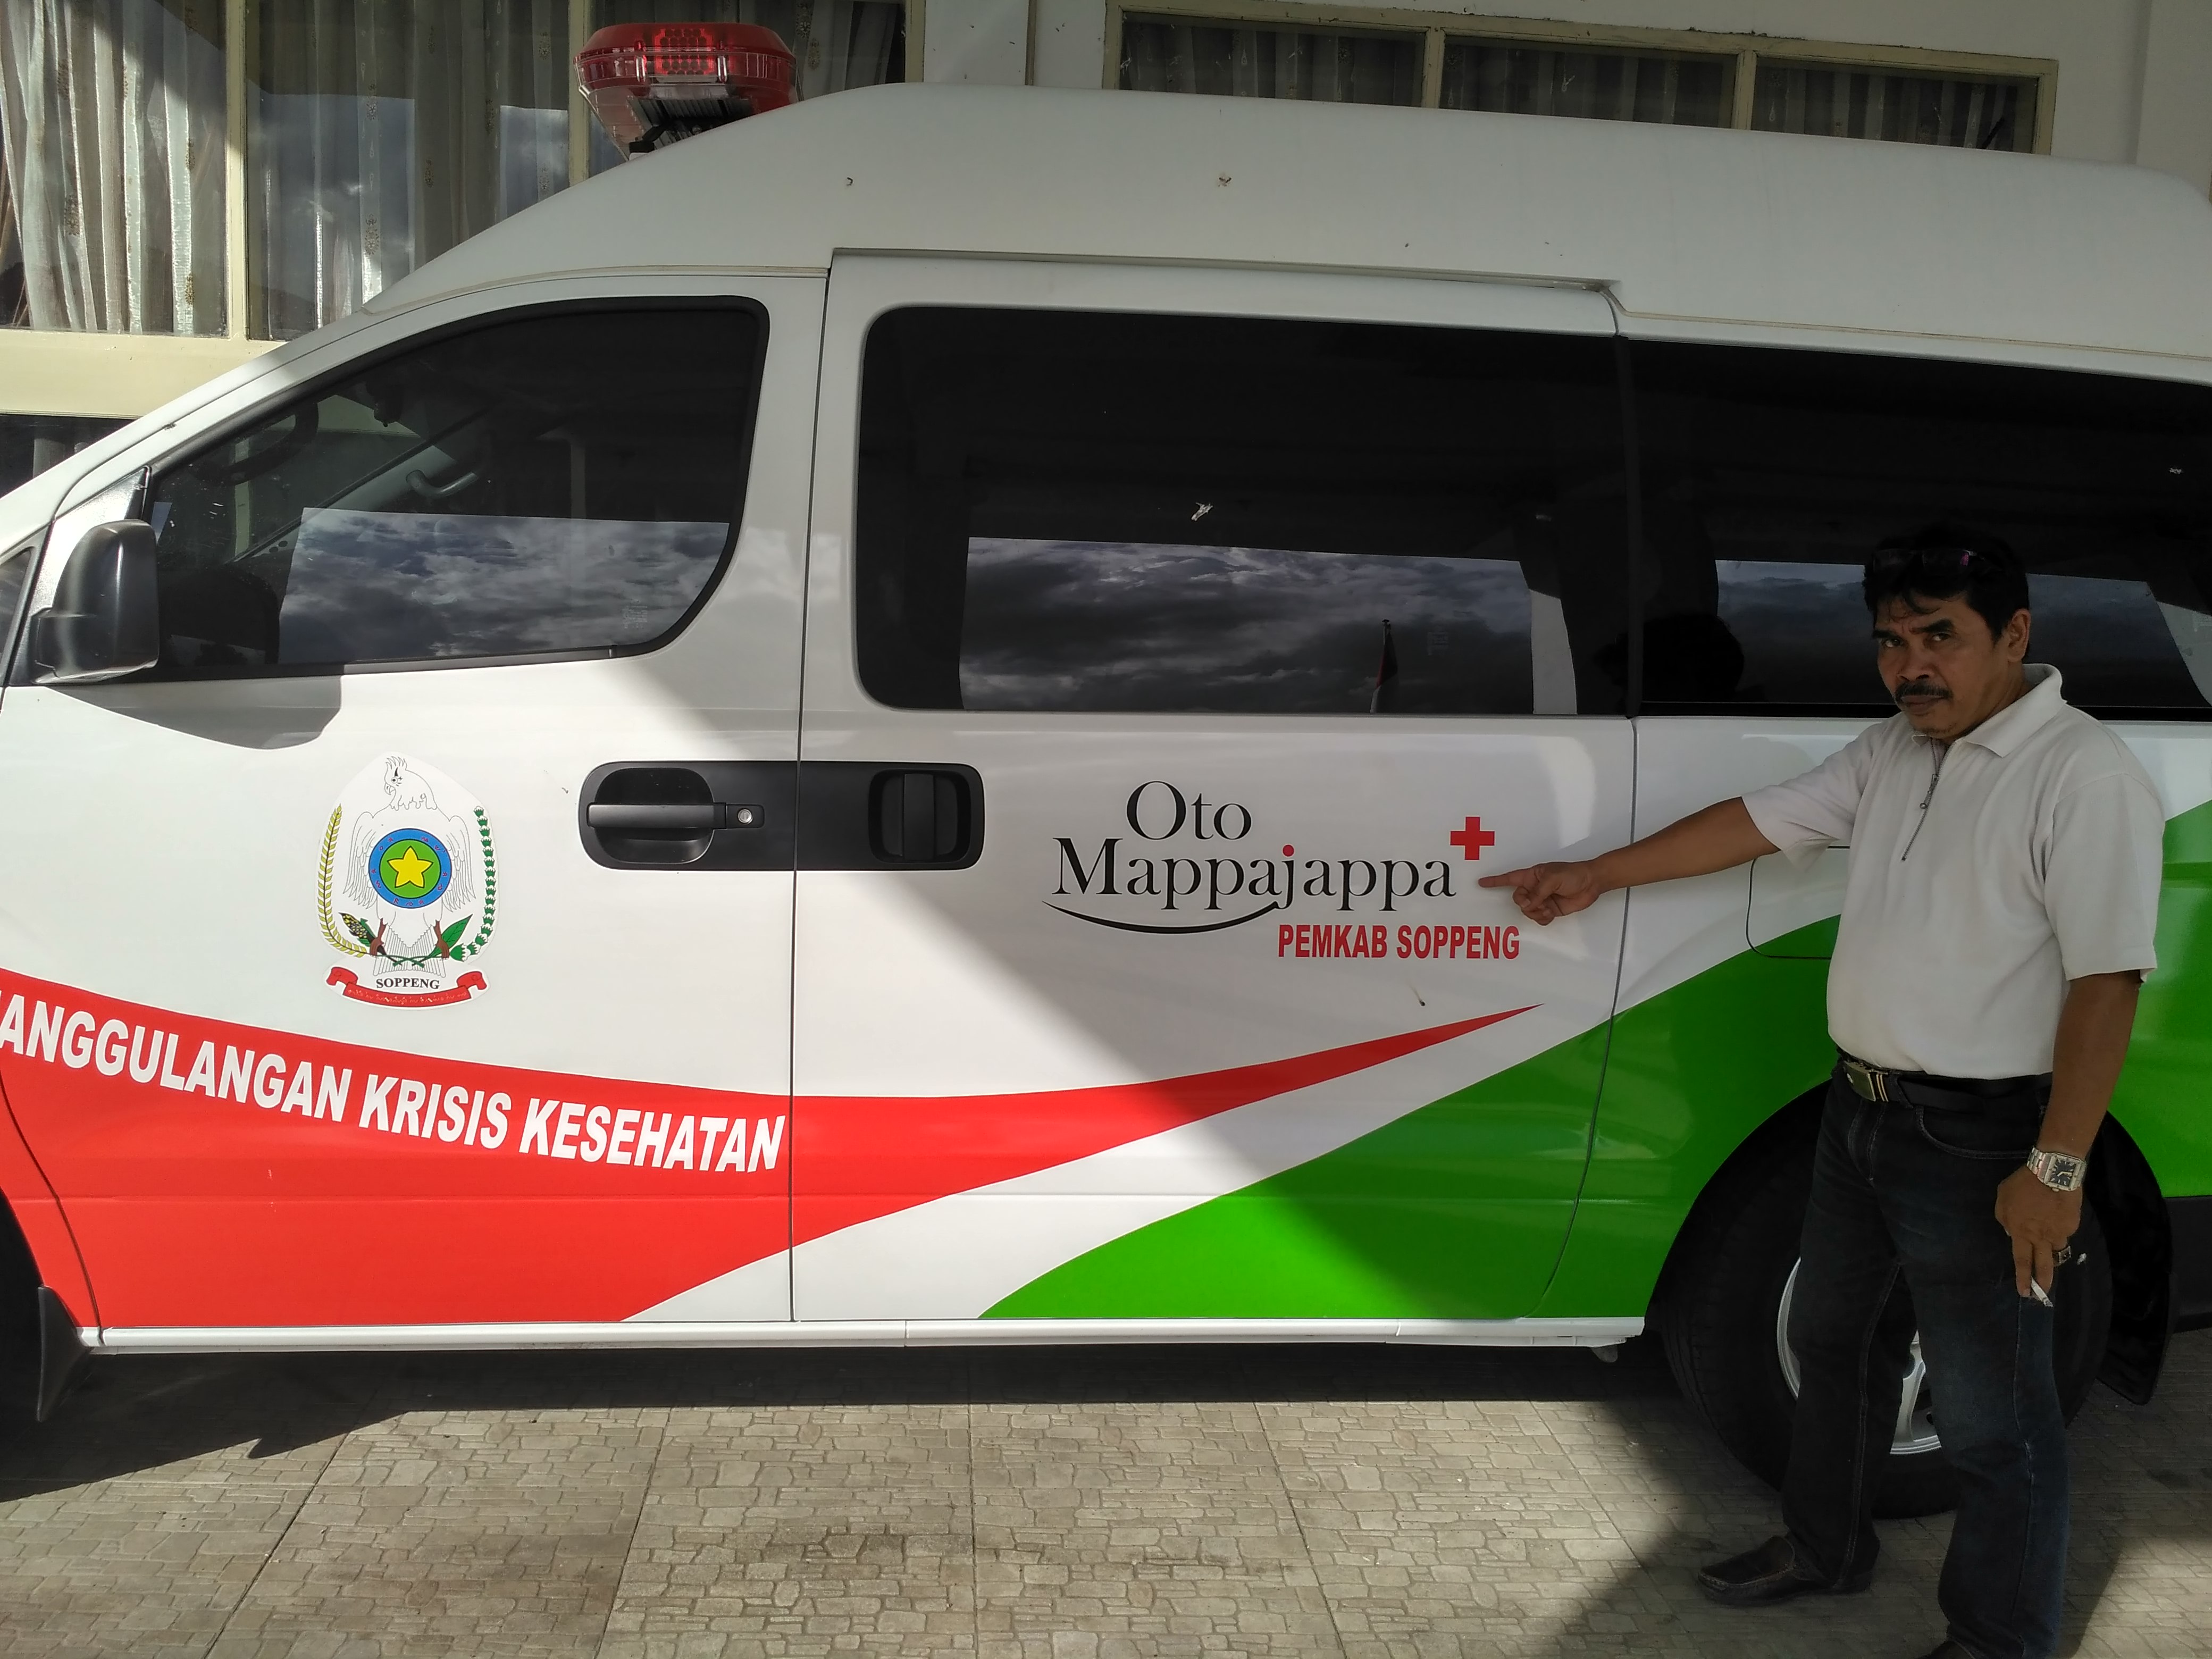 Mappajappa, Ambulance Canggih Milik Pemkab Soppeng